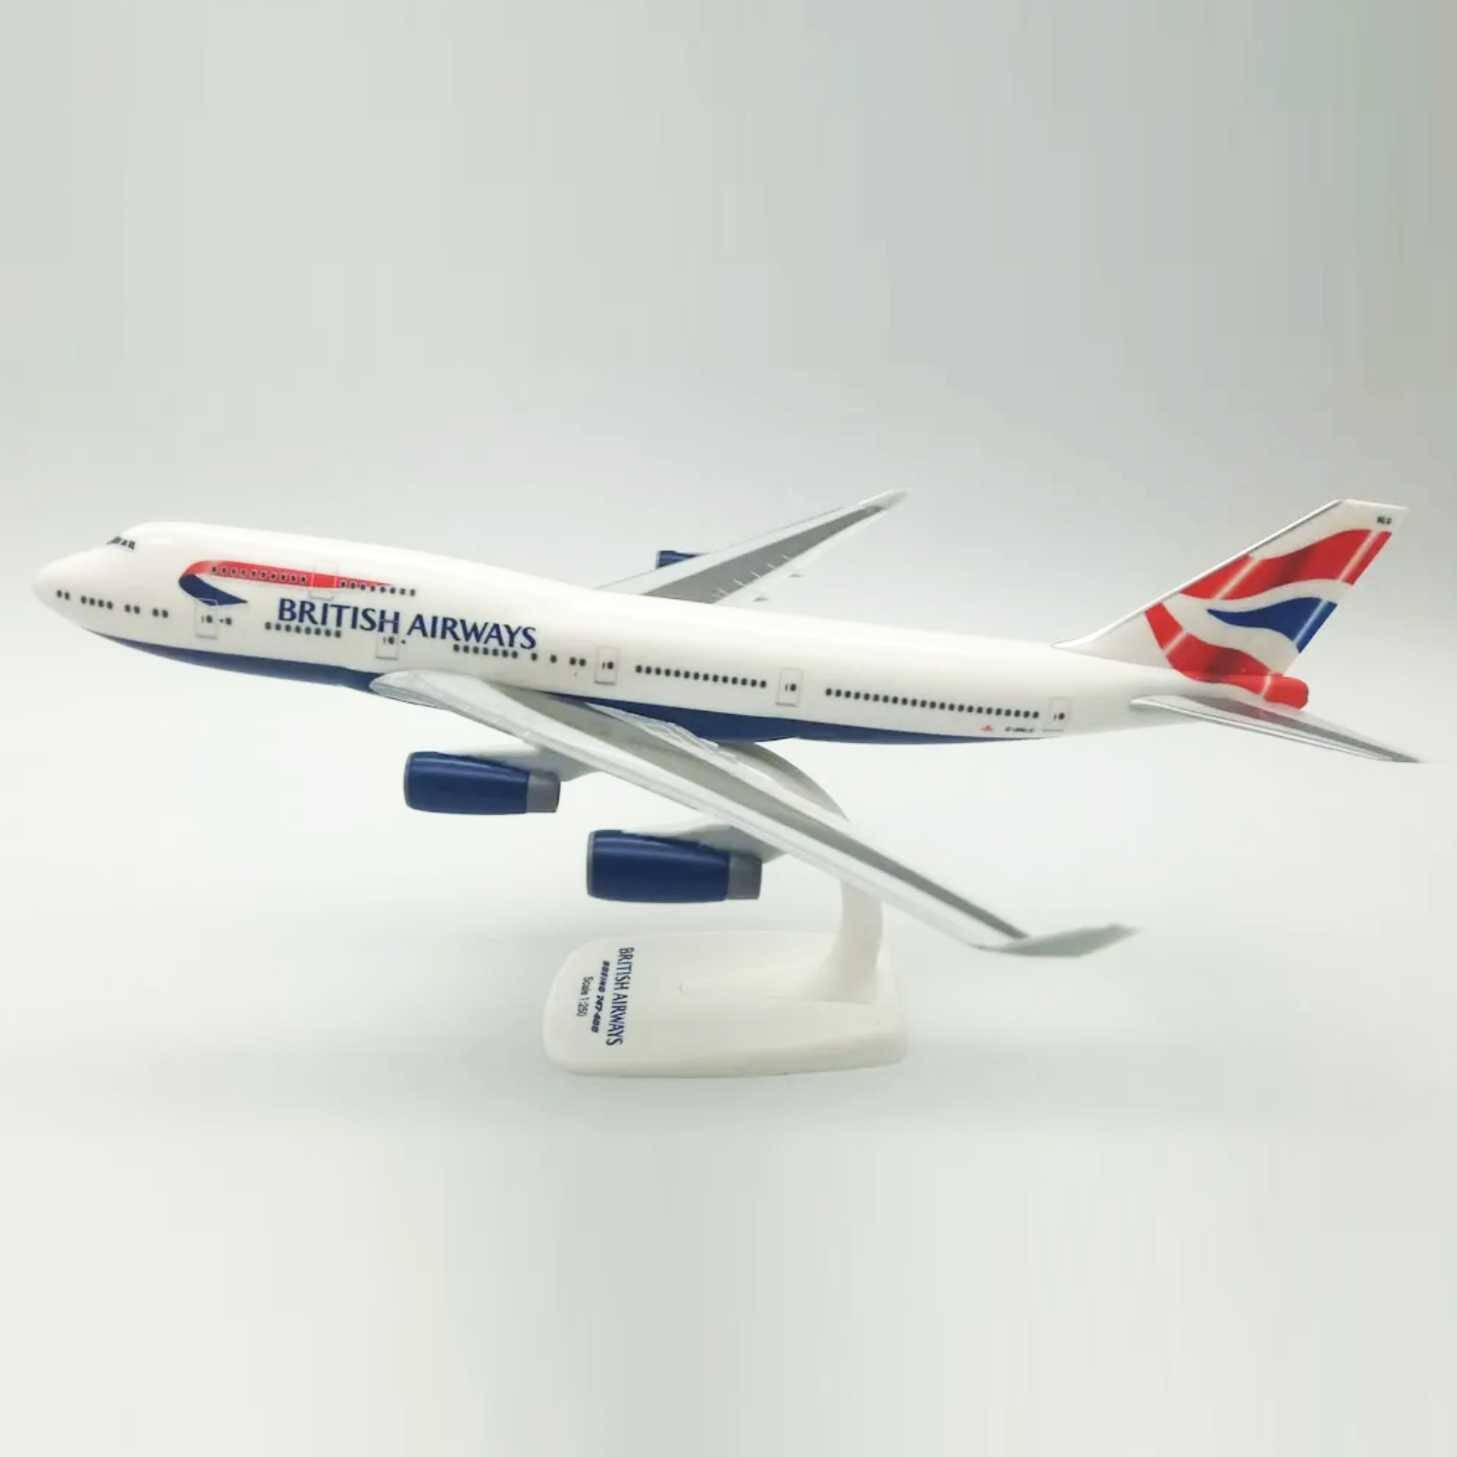 MODEL 1/250 BOEING 747 BRITISH AIRWAYS